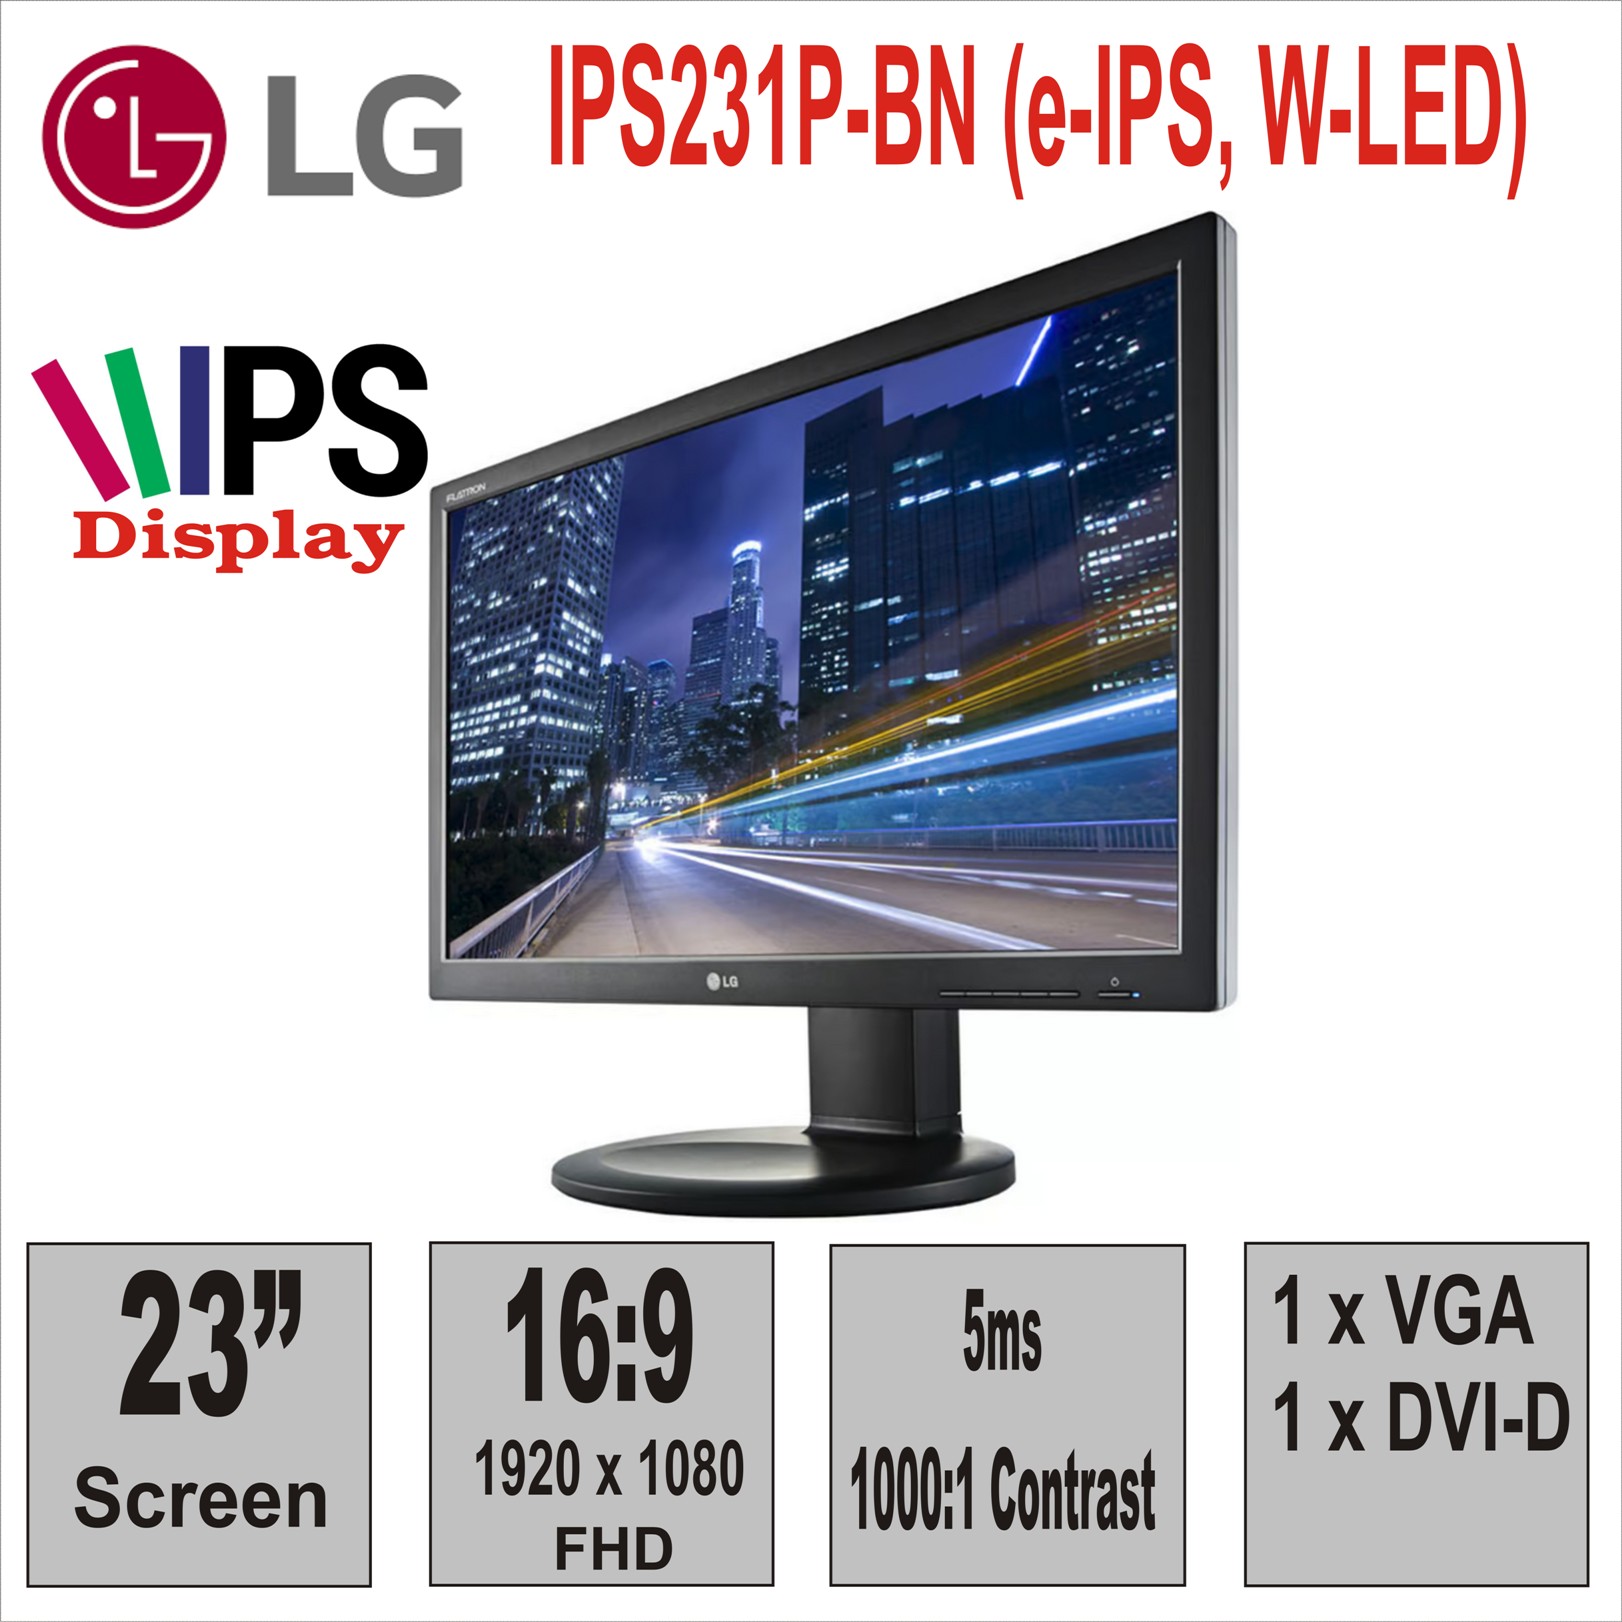 Монитор 23“ LG IPS231P-BN (e-IPS, W-LED)